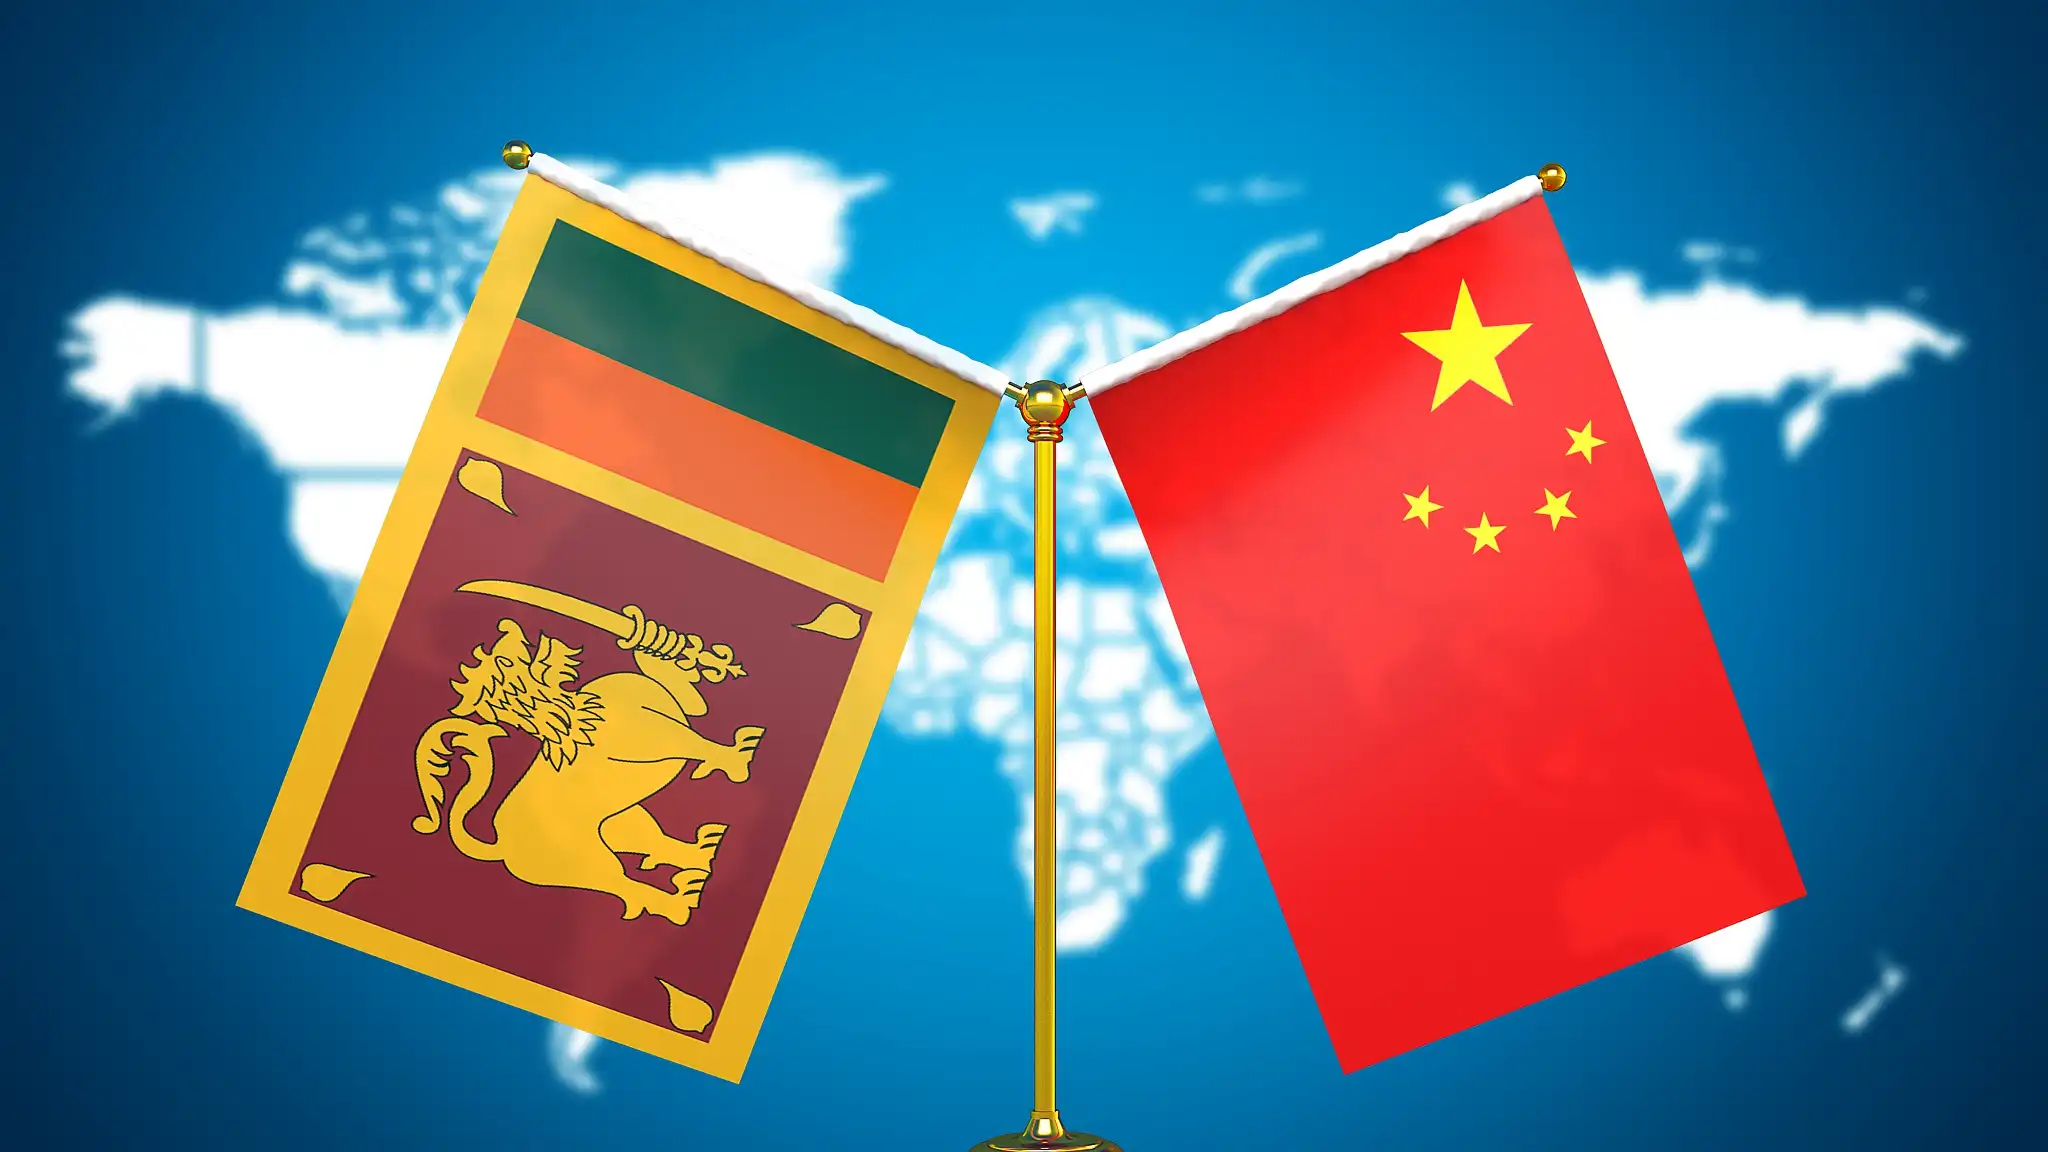 سری لنکا چینی قرضوں کے جال کی وجہ سے فارن ایکسچینج پالیسی میں گرفتار، رپورٹ میں چونکانے والا انکشاف